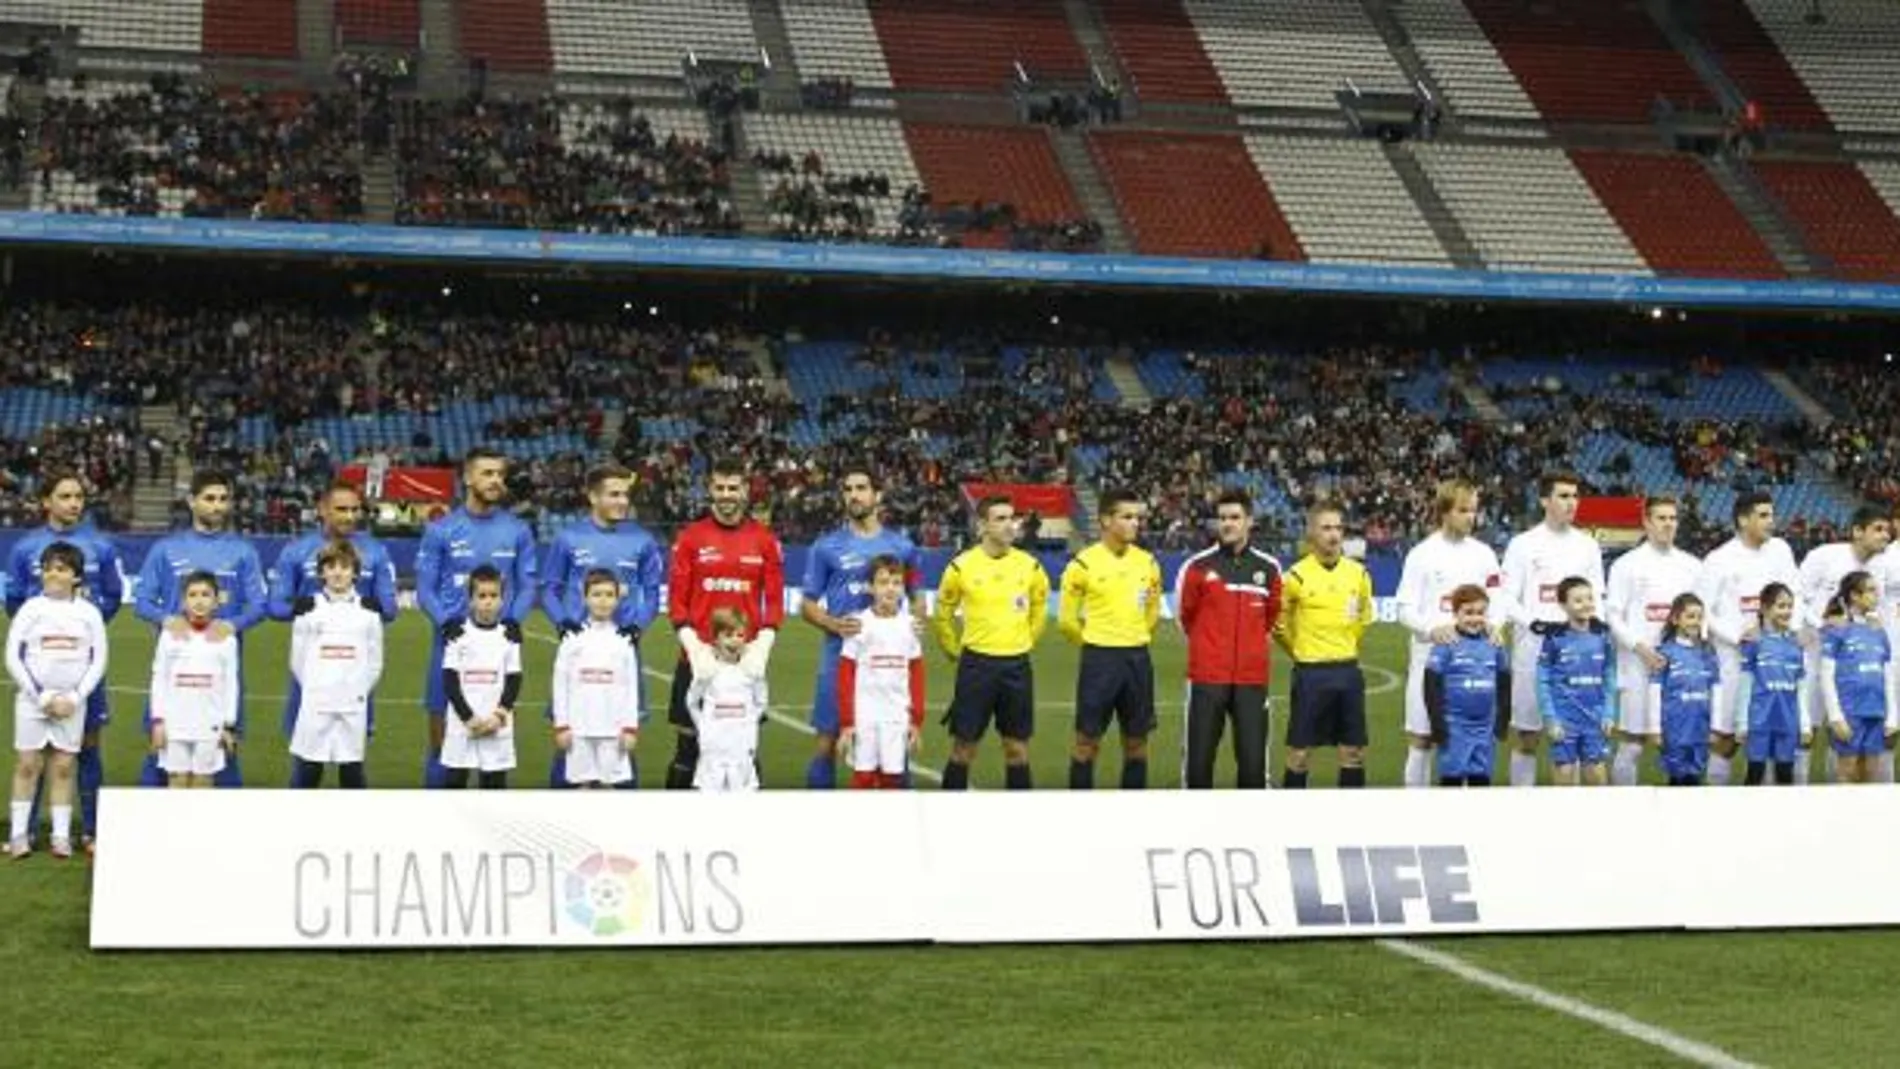 Los equipos de las selecciones de la Liga de Fútbol Profesional, Este y Oeste, posan antes del comienzo del partido de la segunda edición de Champions for Life.